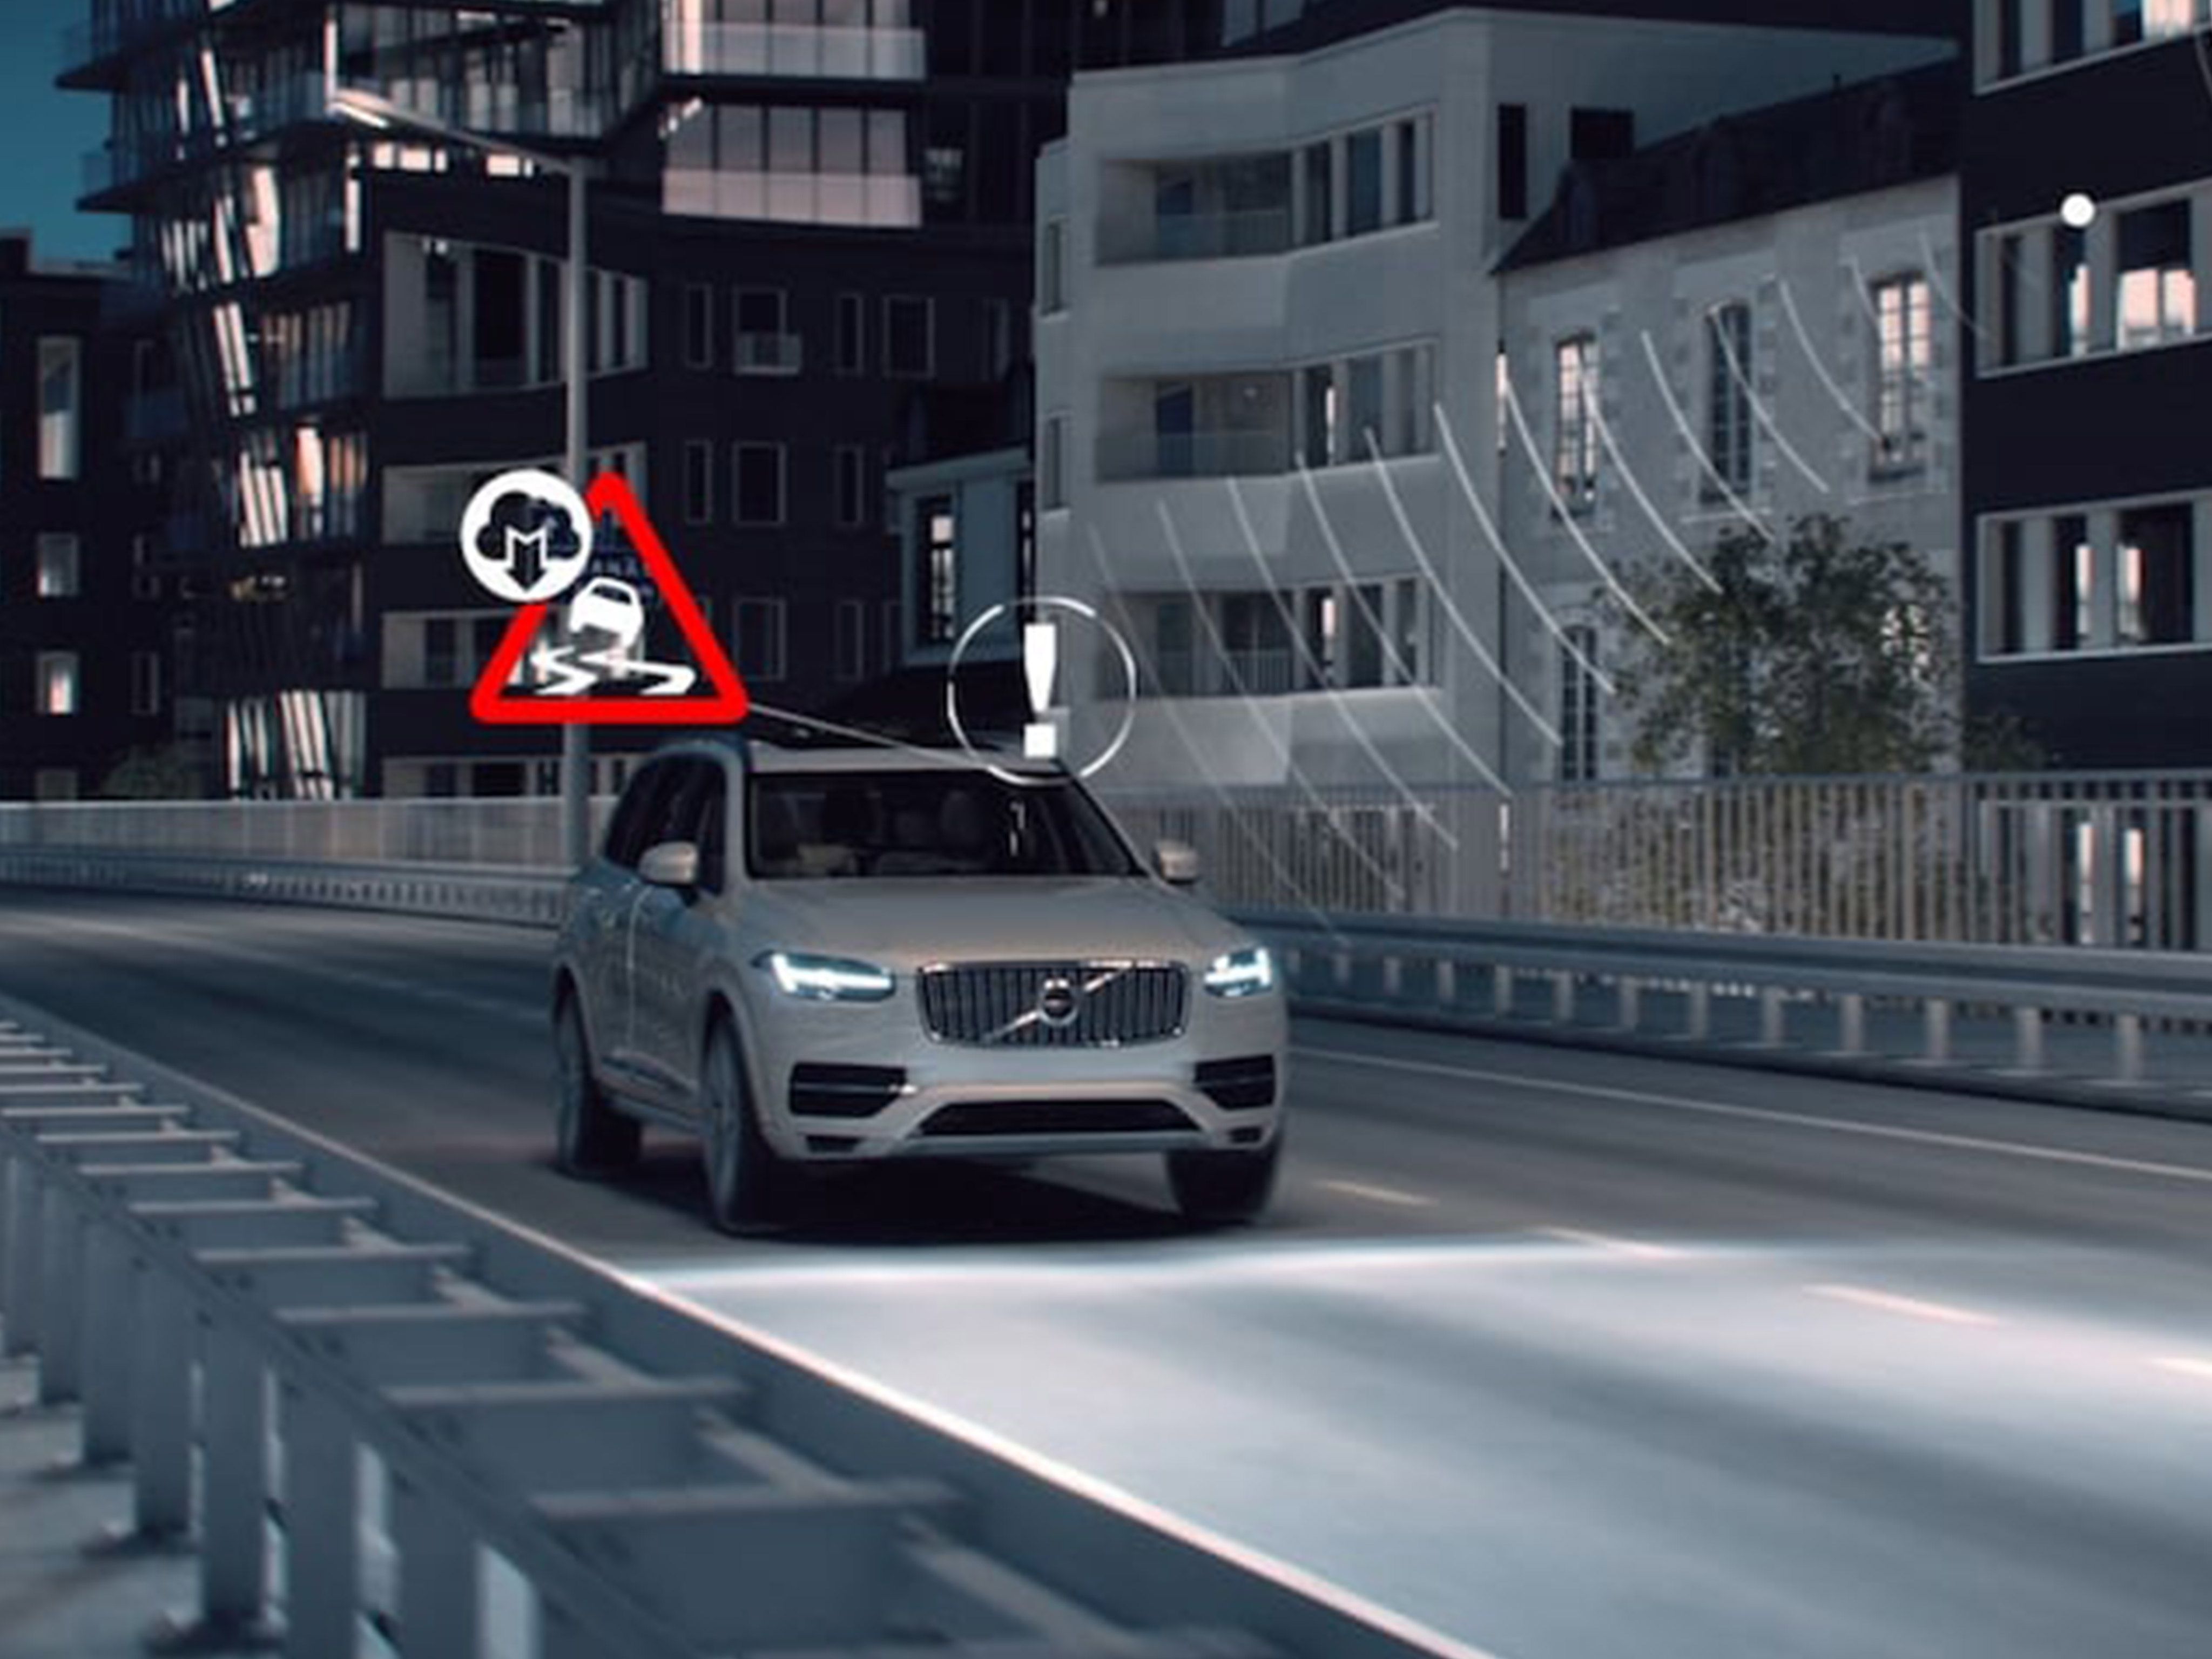 Valkoinen Volvo ajaa öisessä katumaisemassa. Kuvaan on liitetty kuljettajalle kojetaululla näkyviä ajo-olosuhteisiin liittyviä varoitusvaloja.